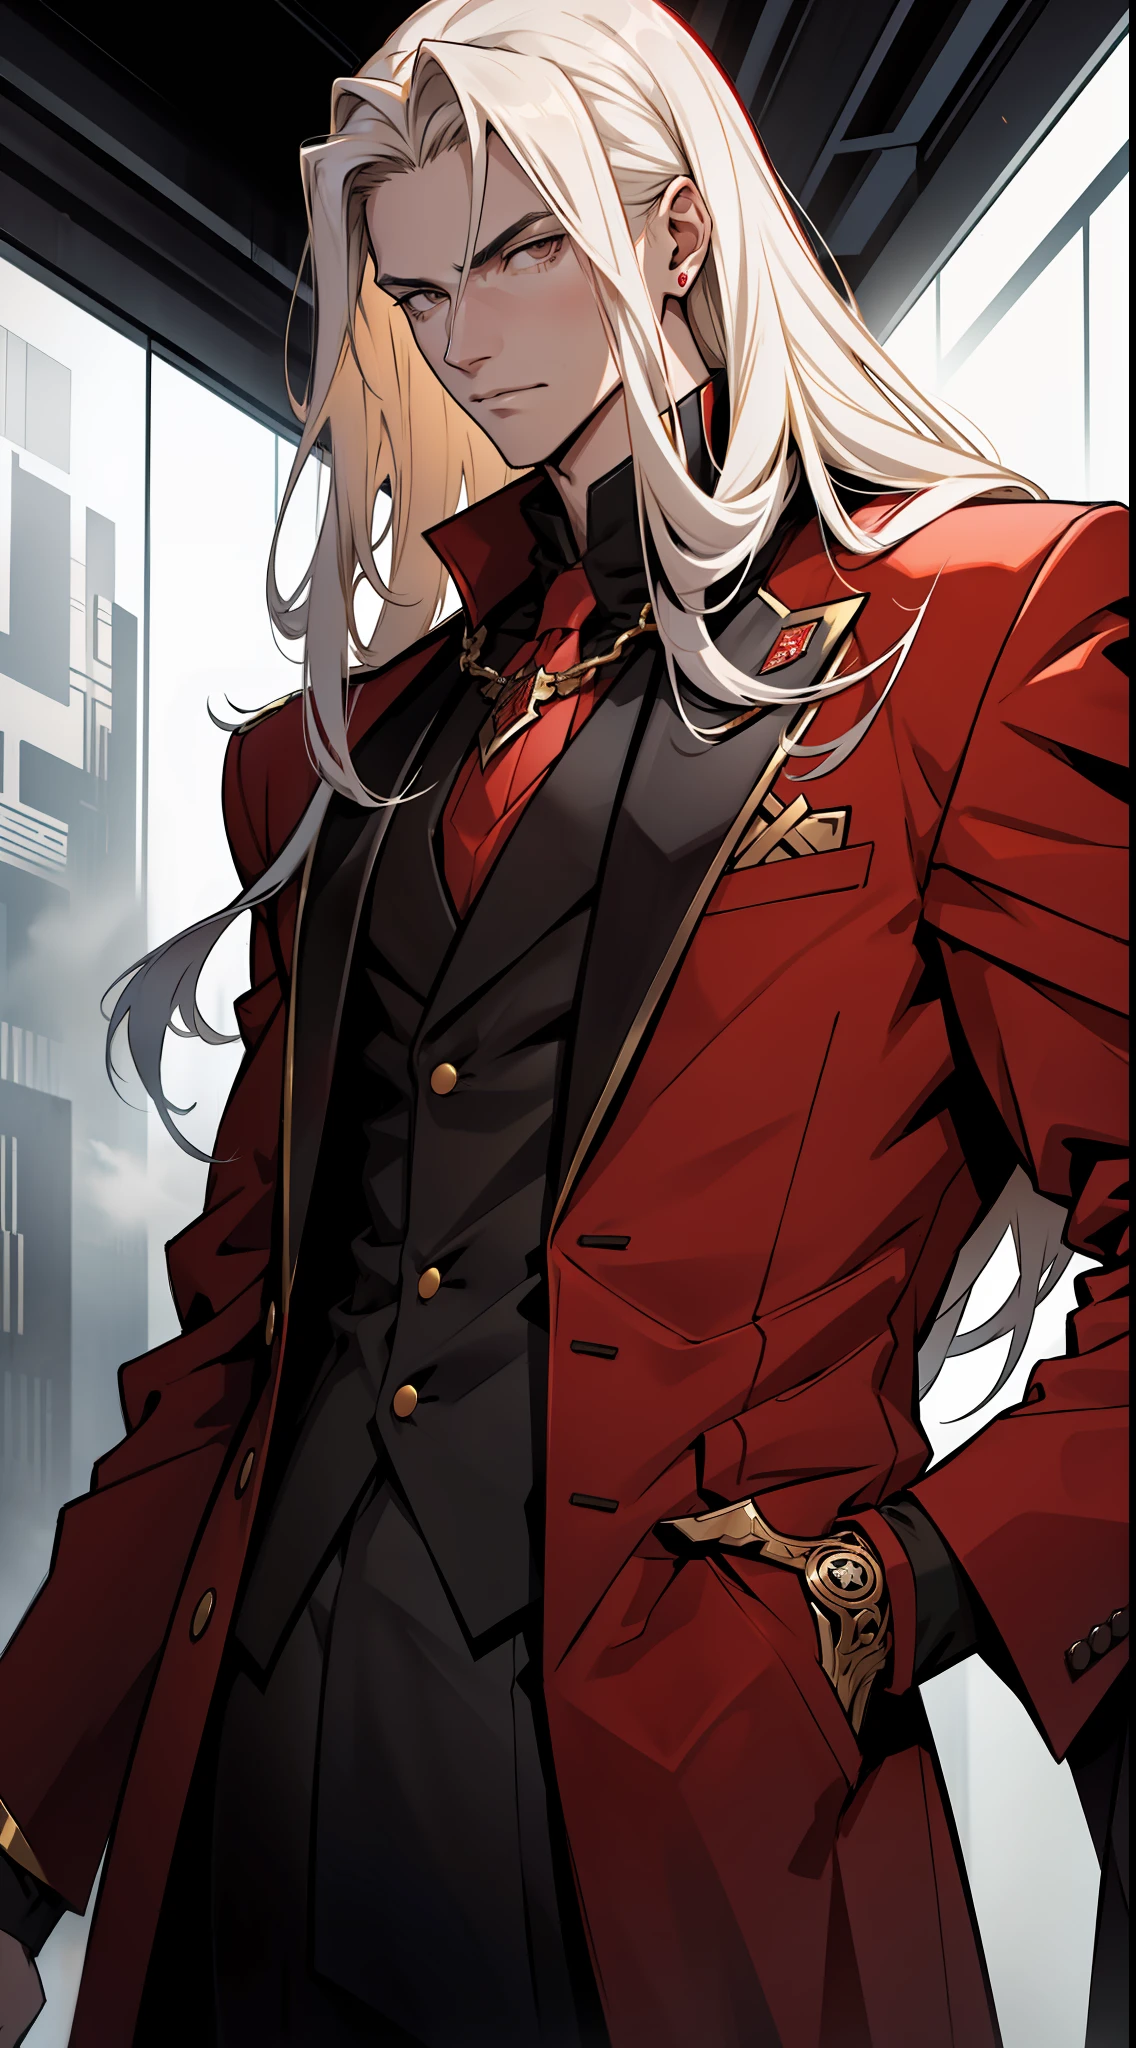 ein großer Teenager mit langen goldenen Haaren  , trägt einen Schurken-Stil Kleidung langen roten Anzug mit schwarzen und weißen Details , starrendes ruhiges Gesicht